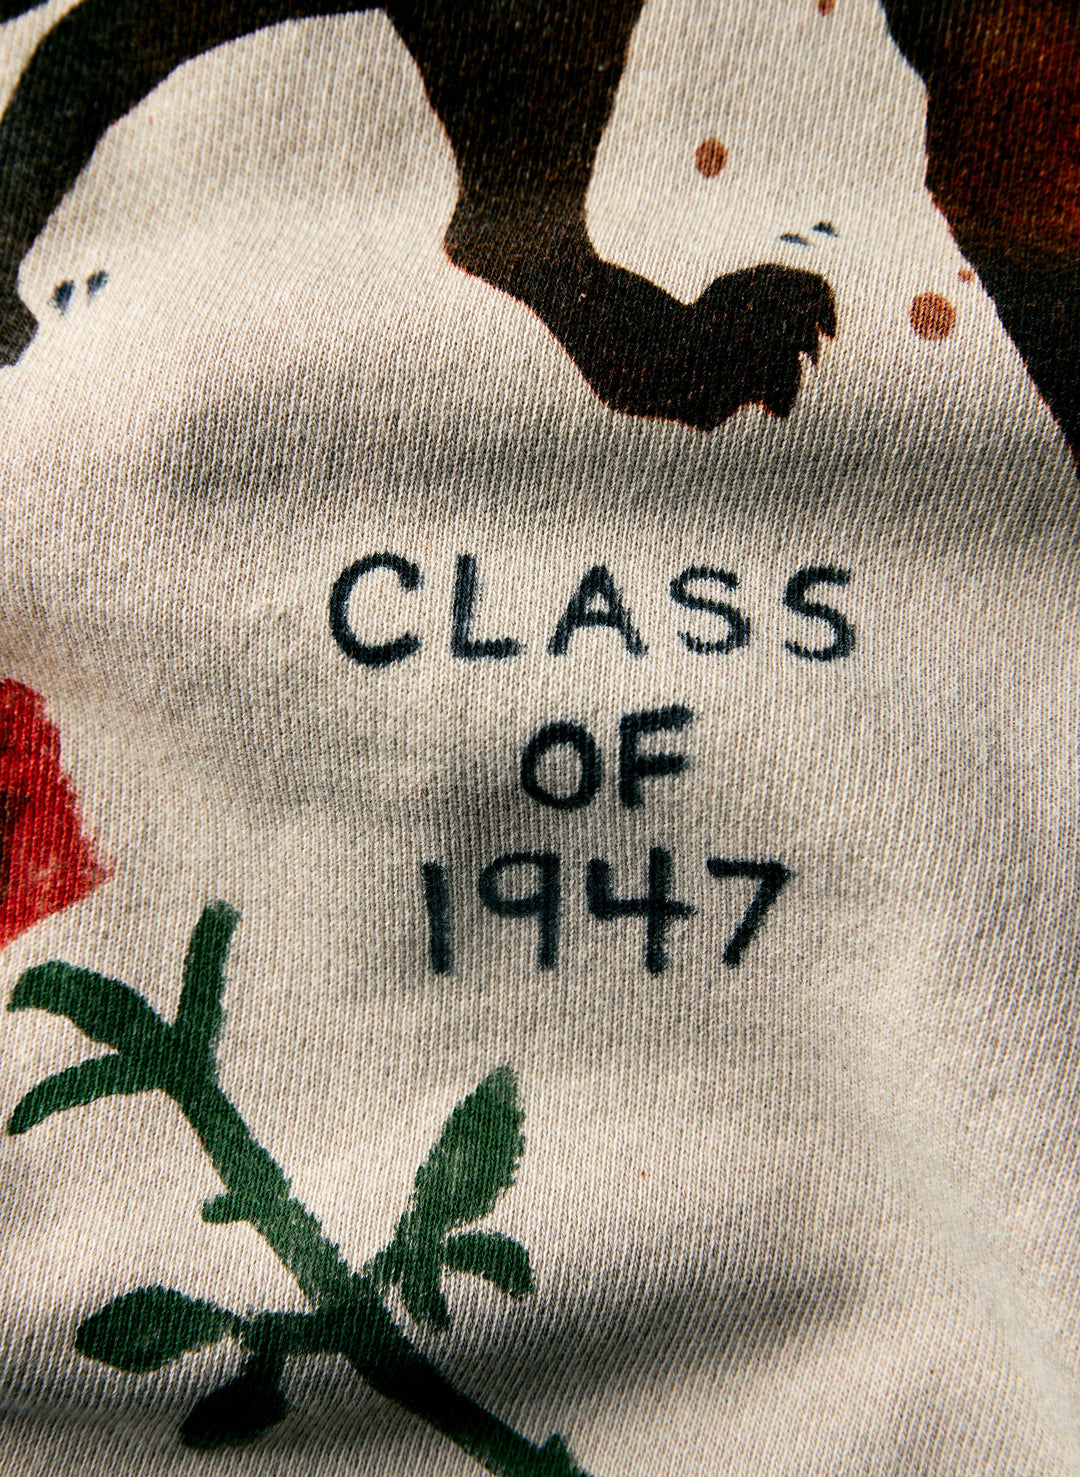 handpainted "class of 47" sweatshirt